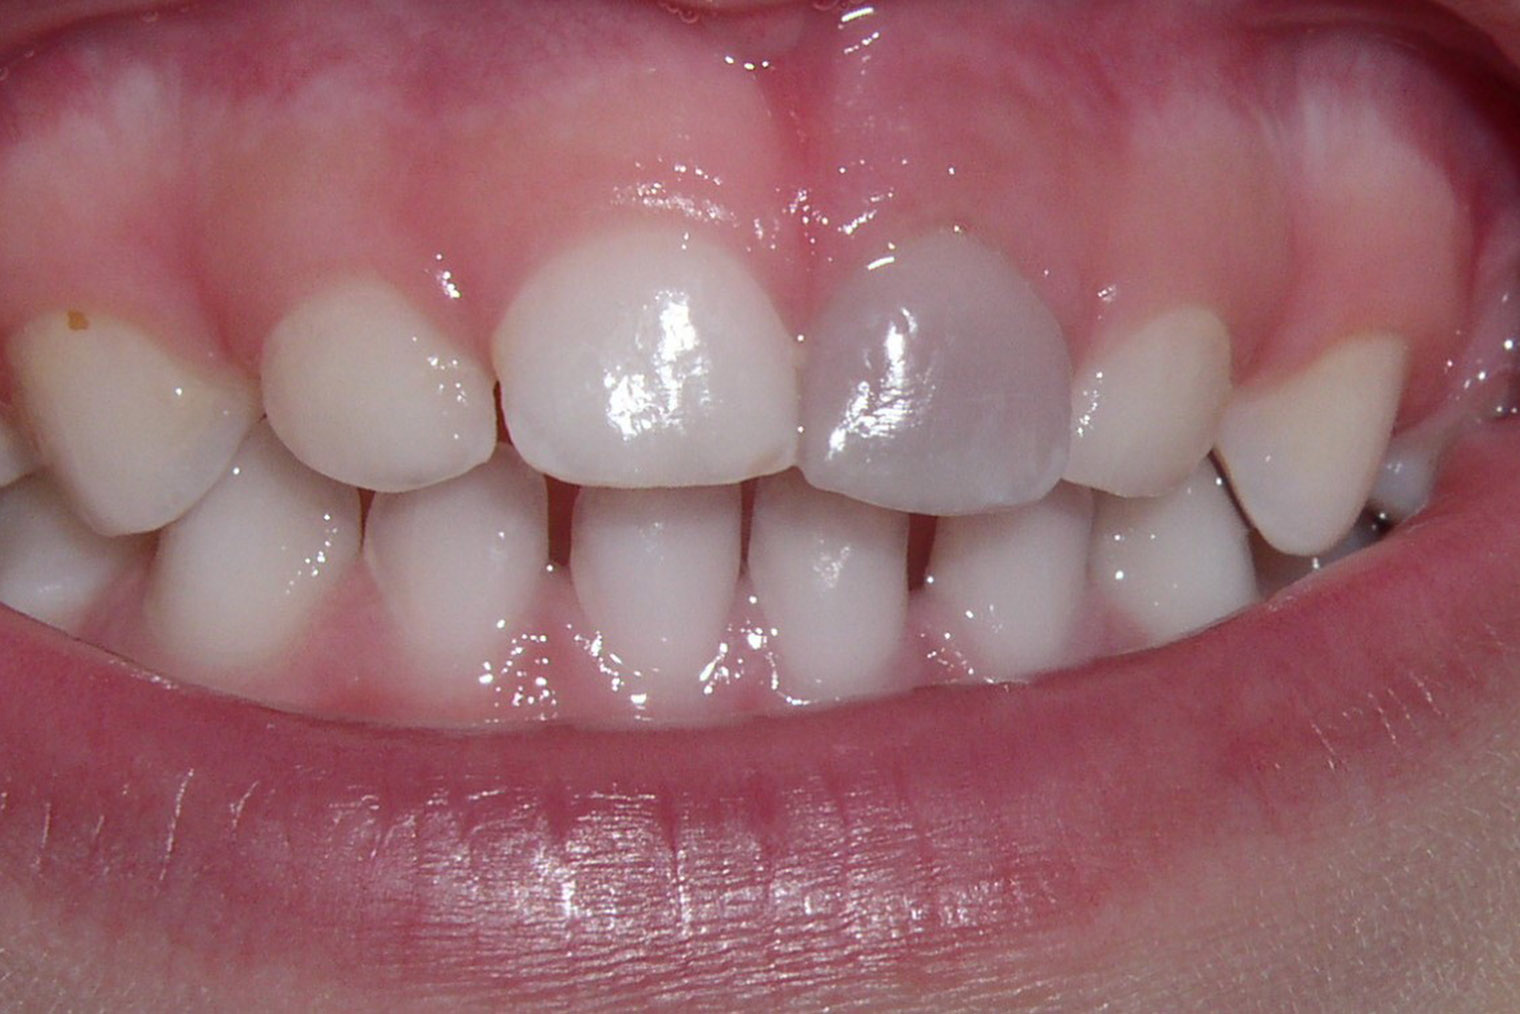 Изменение цвета зуба может быть связано с инфекционным процессом, протекающим внутри него. Источник: pediatricdentistsf.dentist